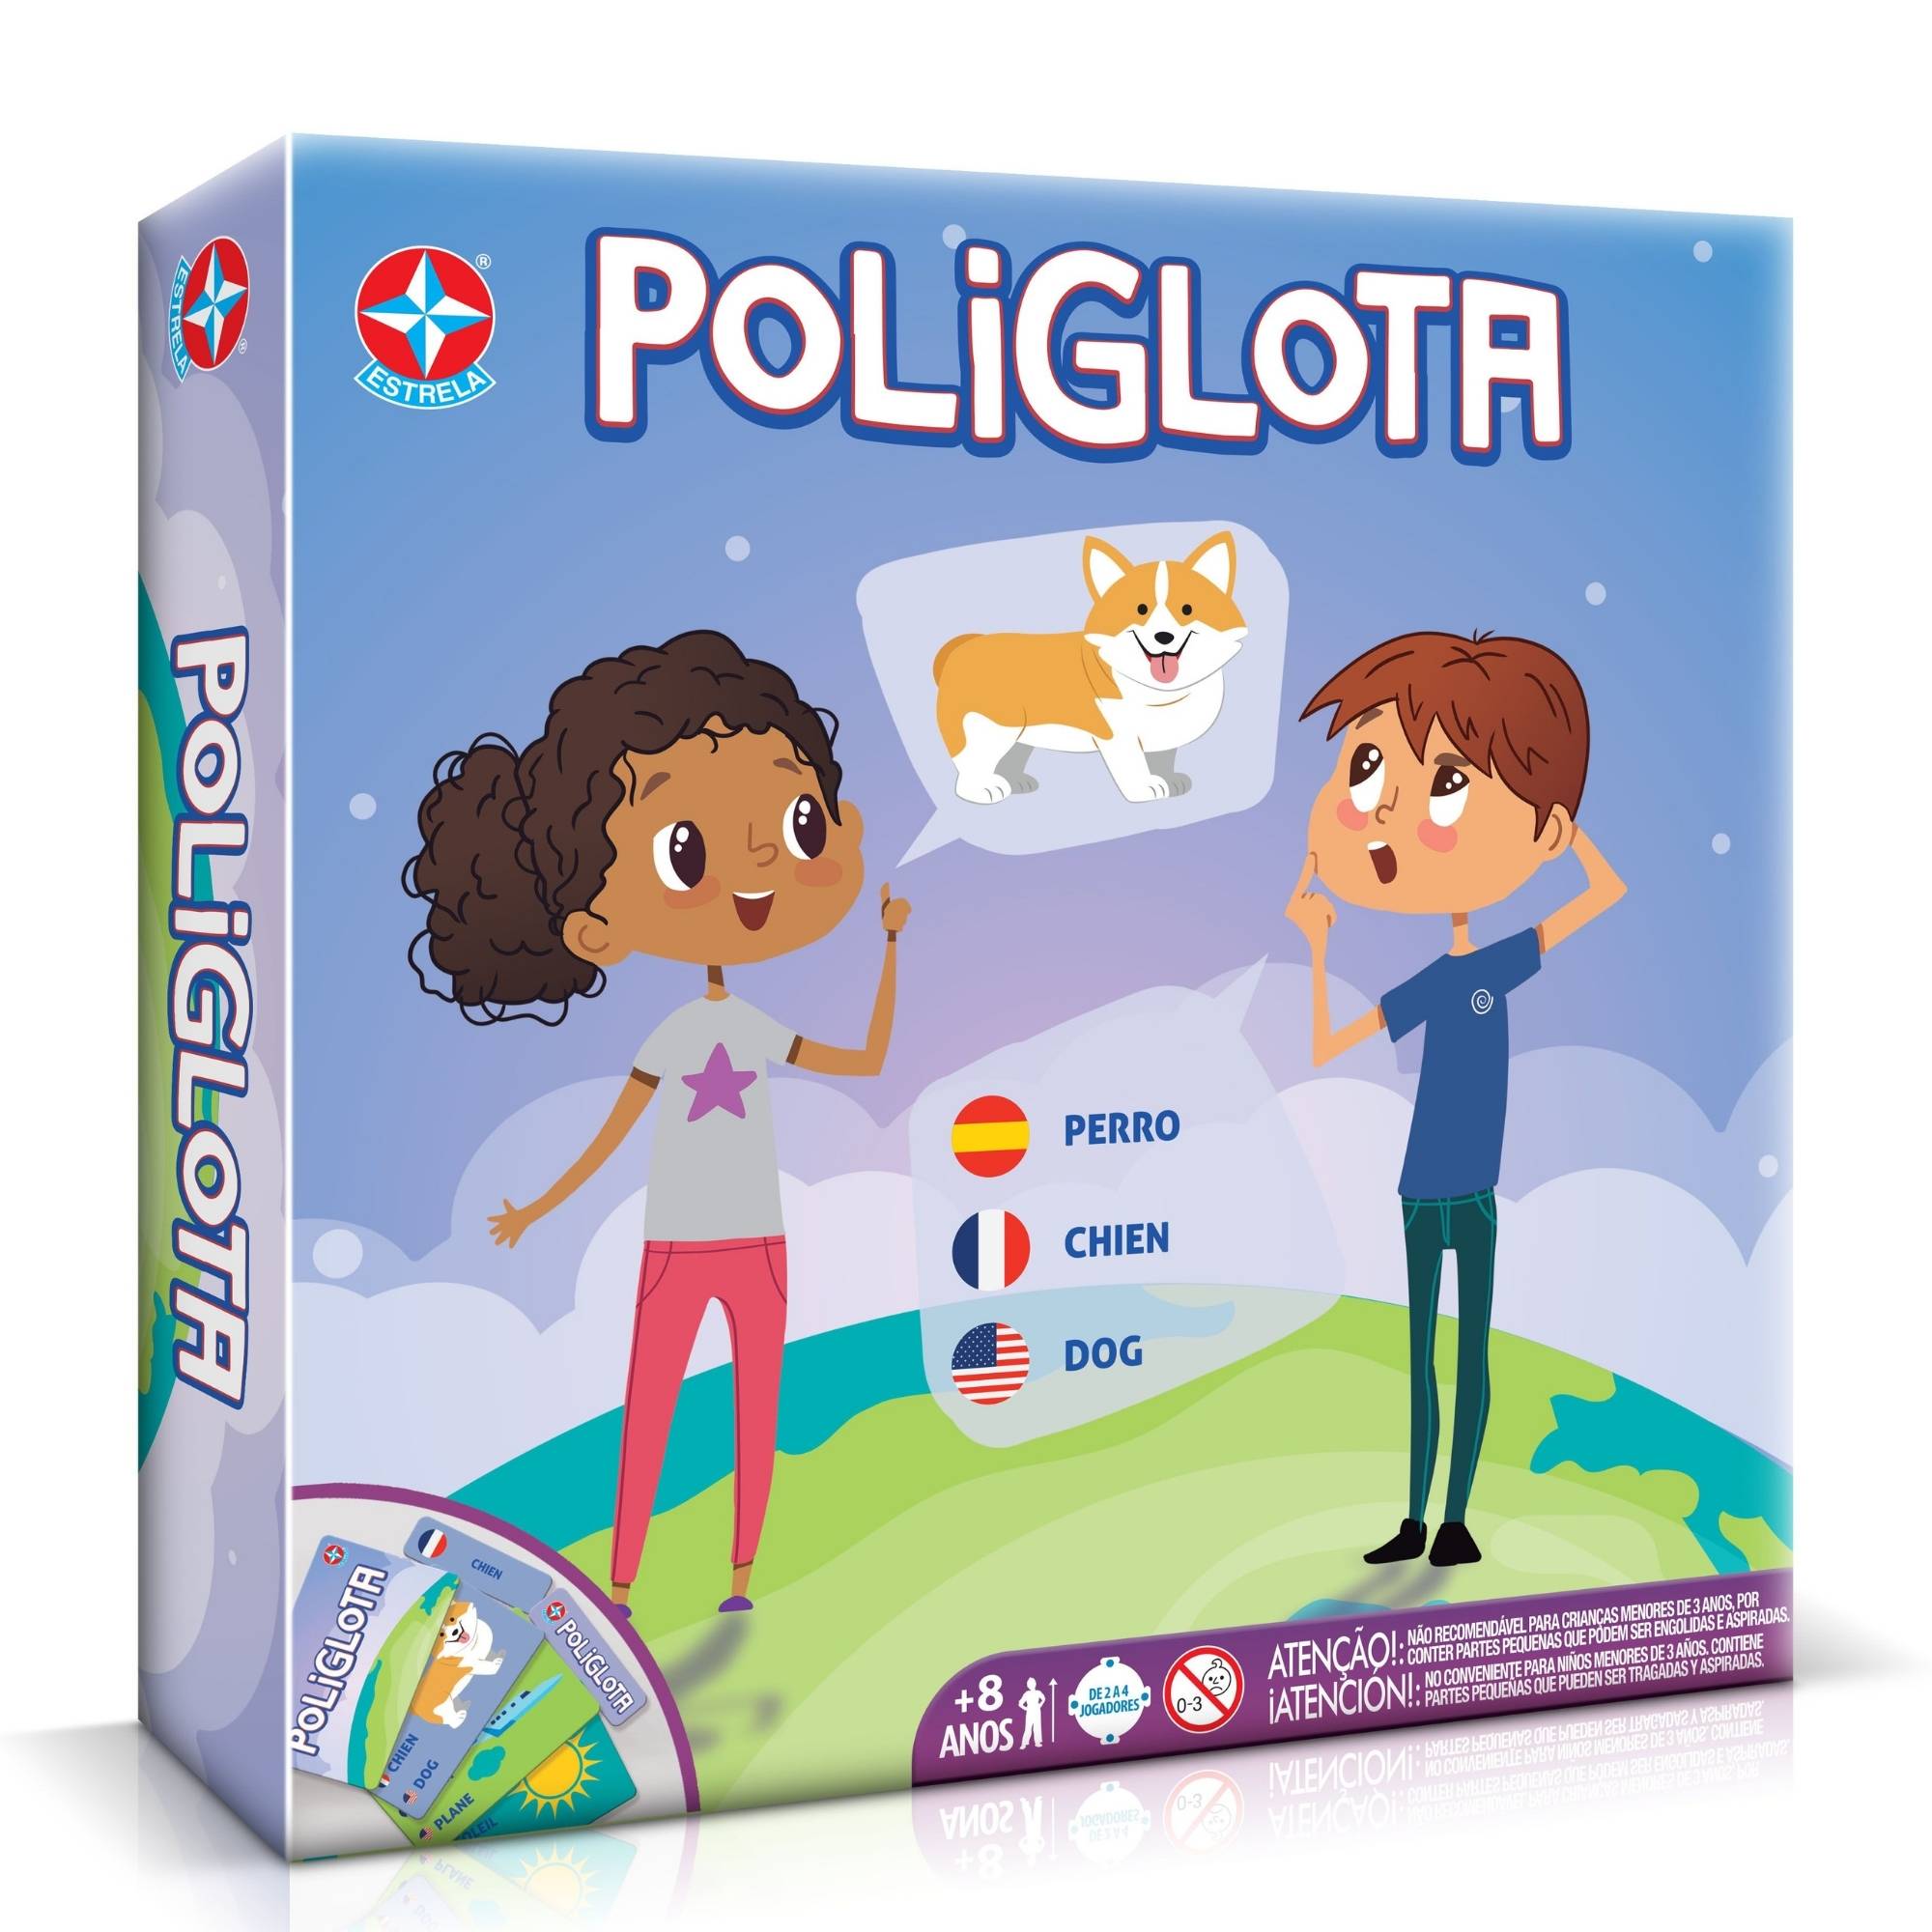 Poliglota - Estrela